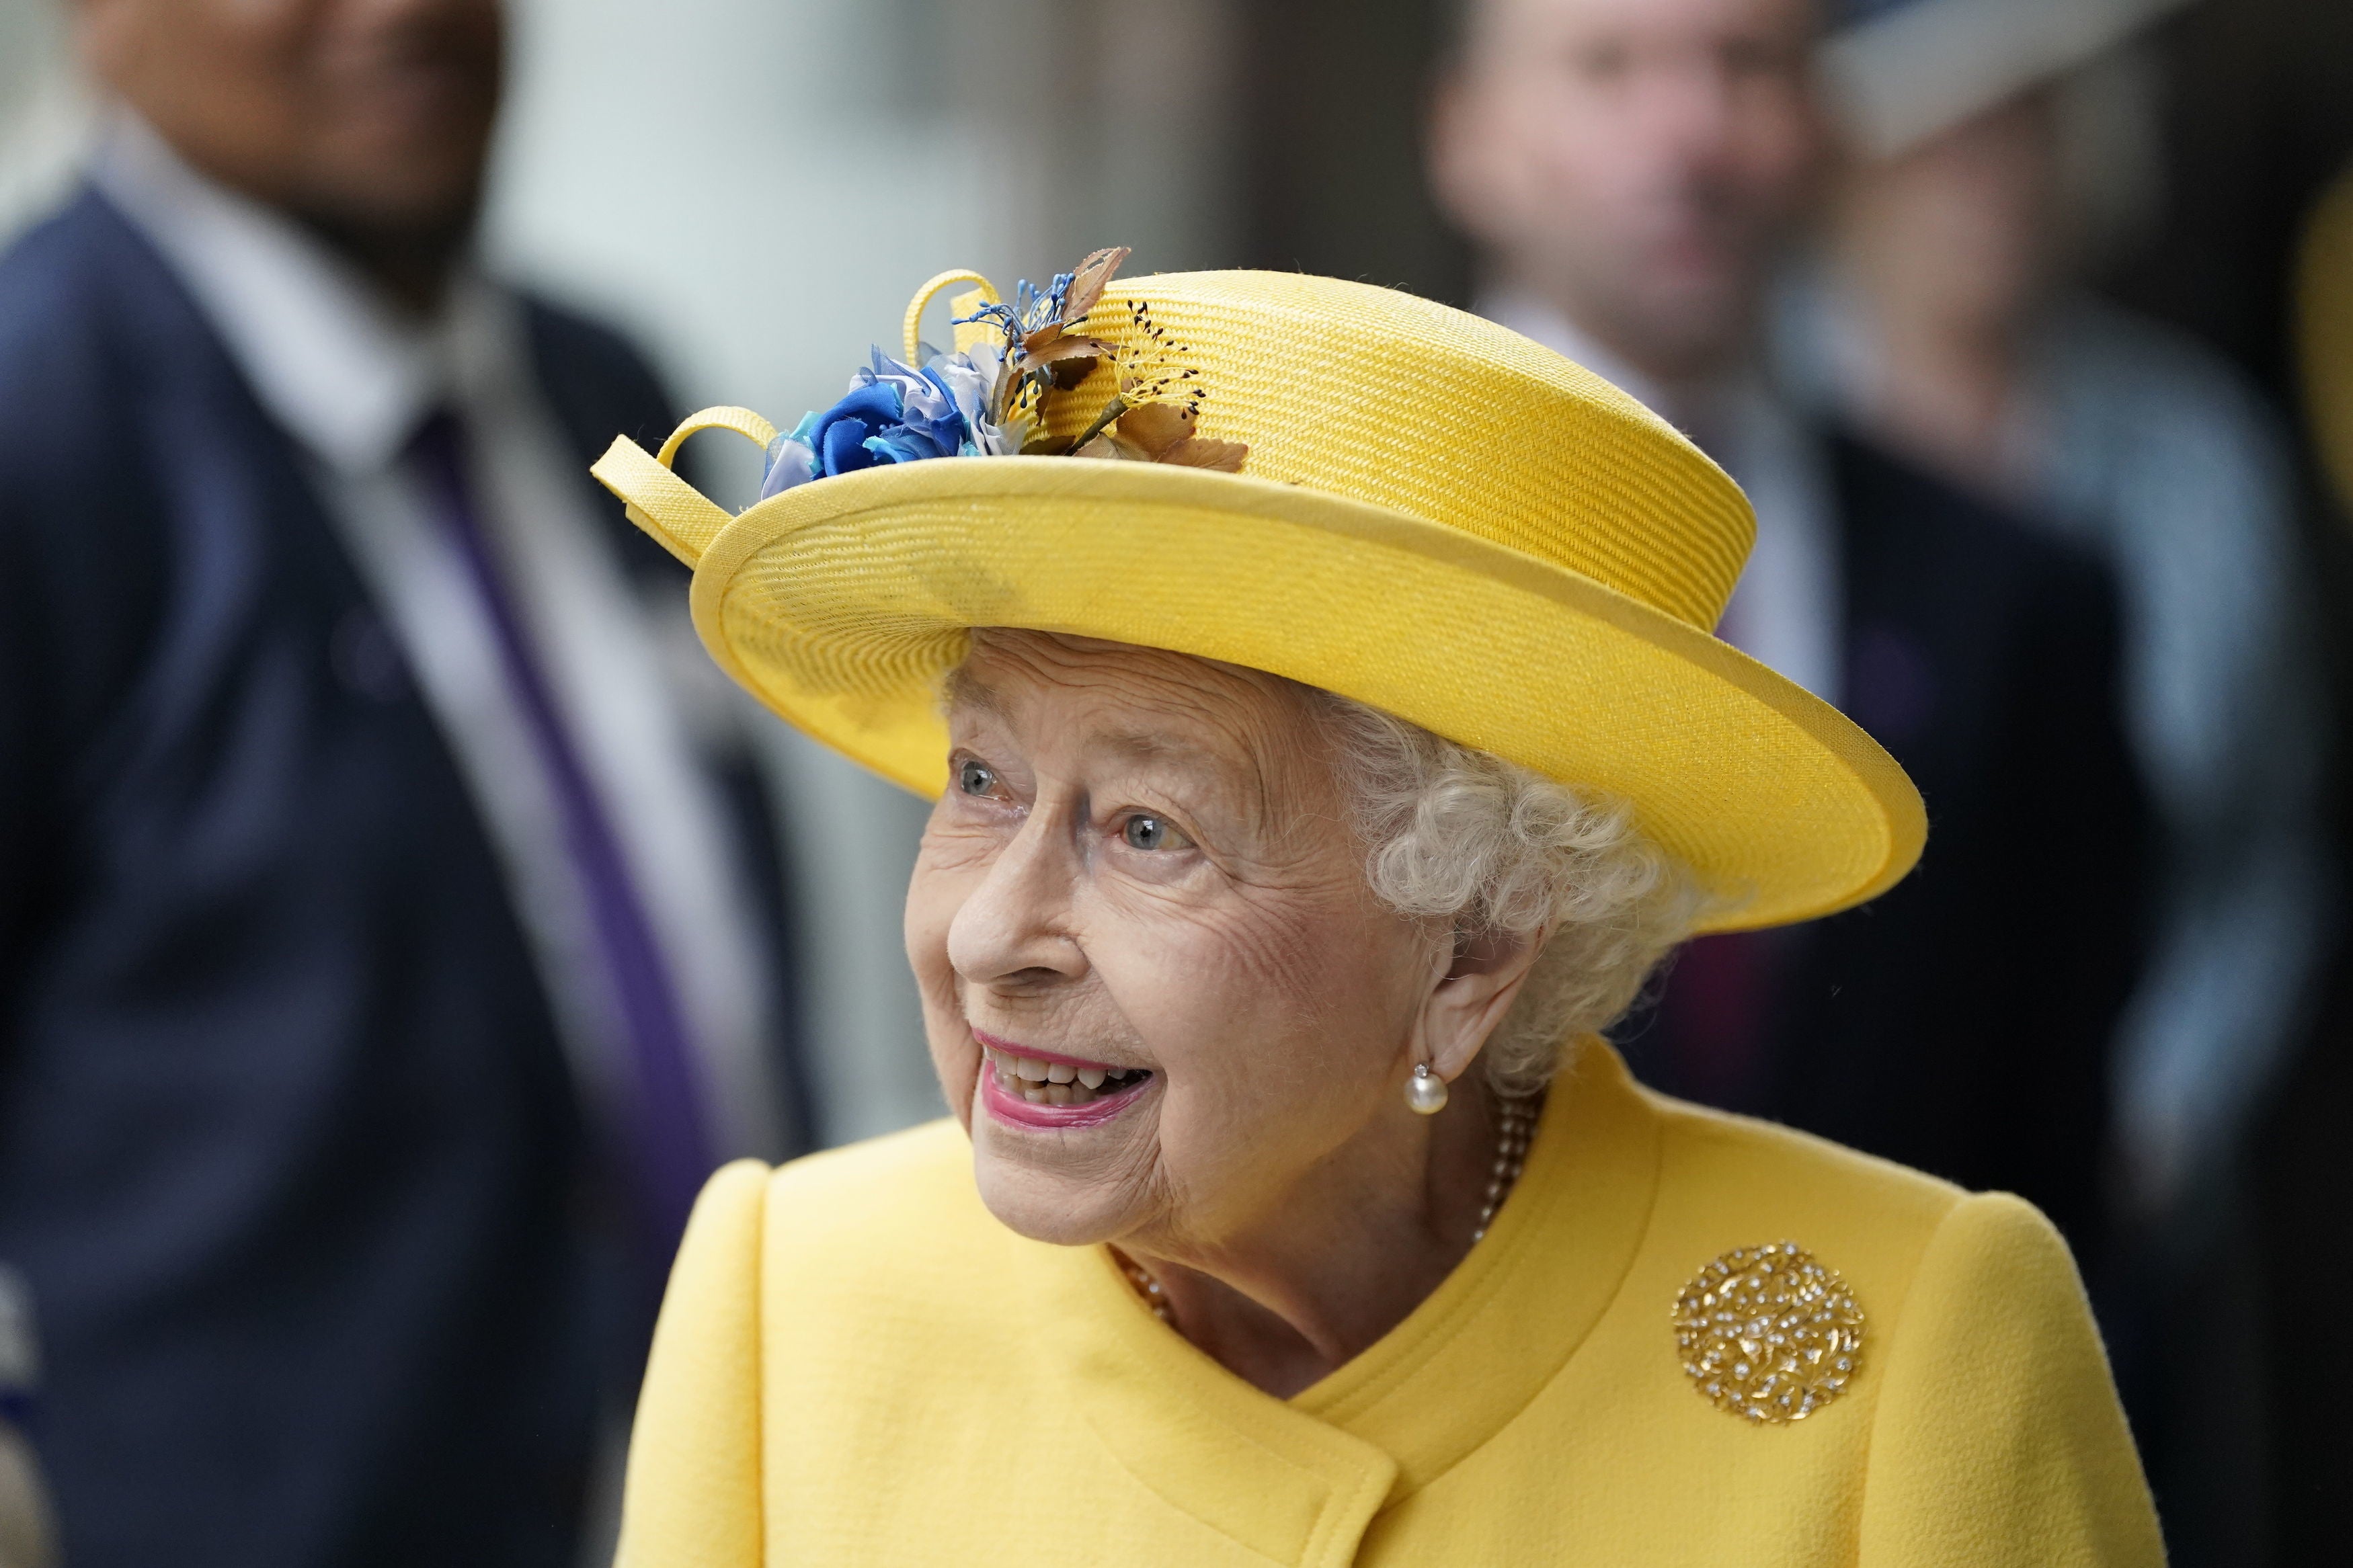 Queen Elizabeth II will celebrate her Platinum Jubilee next week